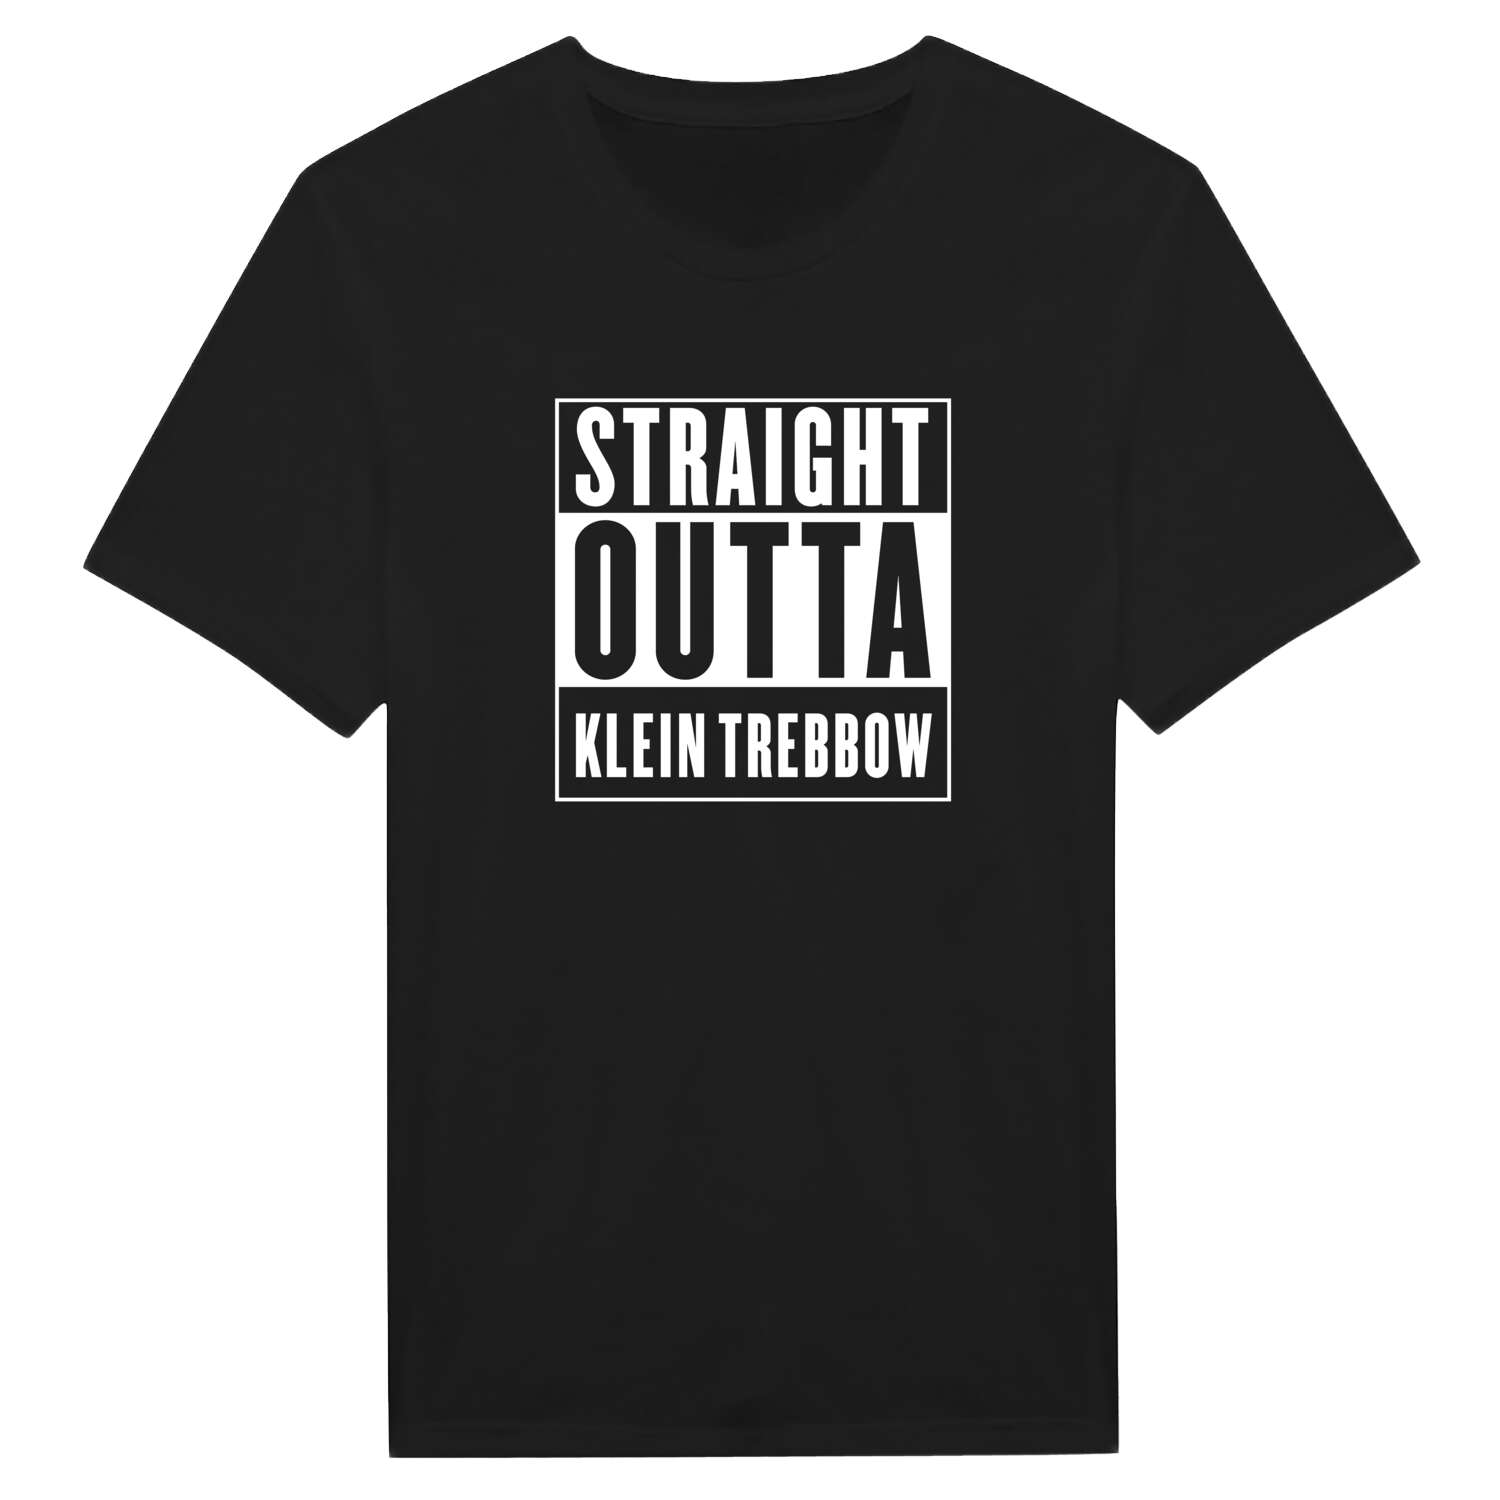 Klein Trebbow T-Shirt »Straight Outta«